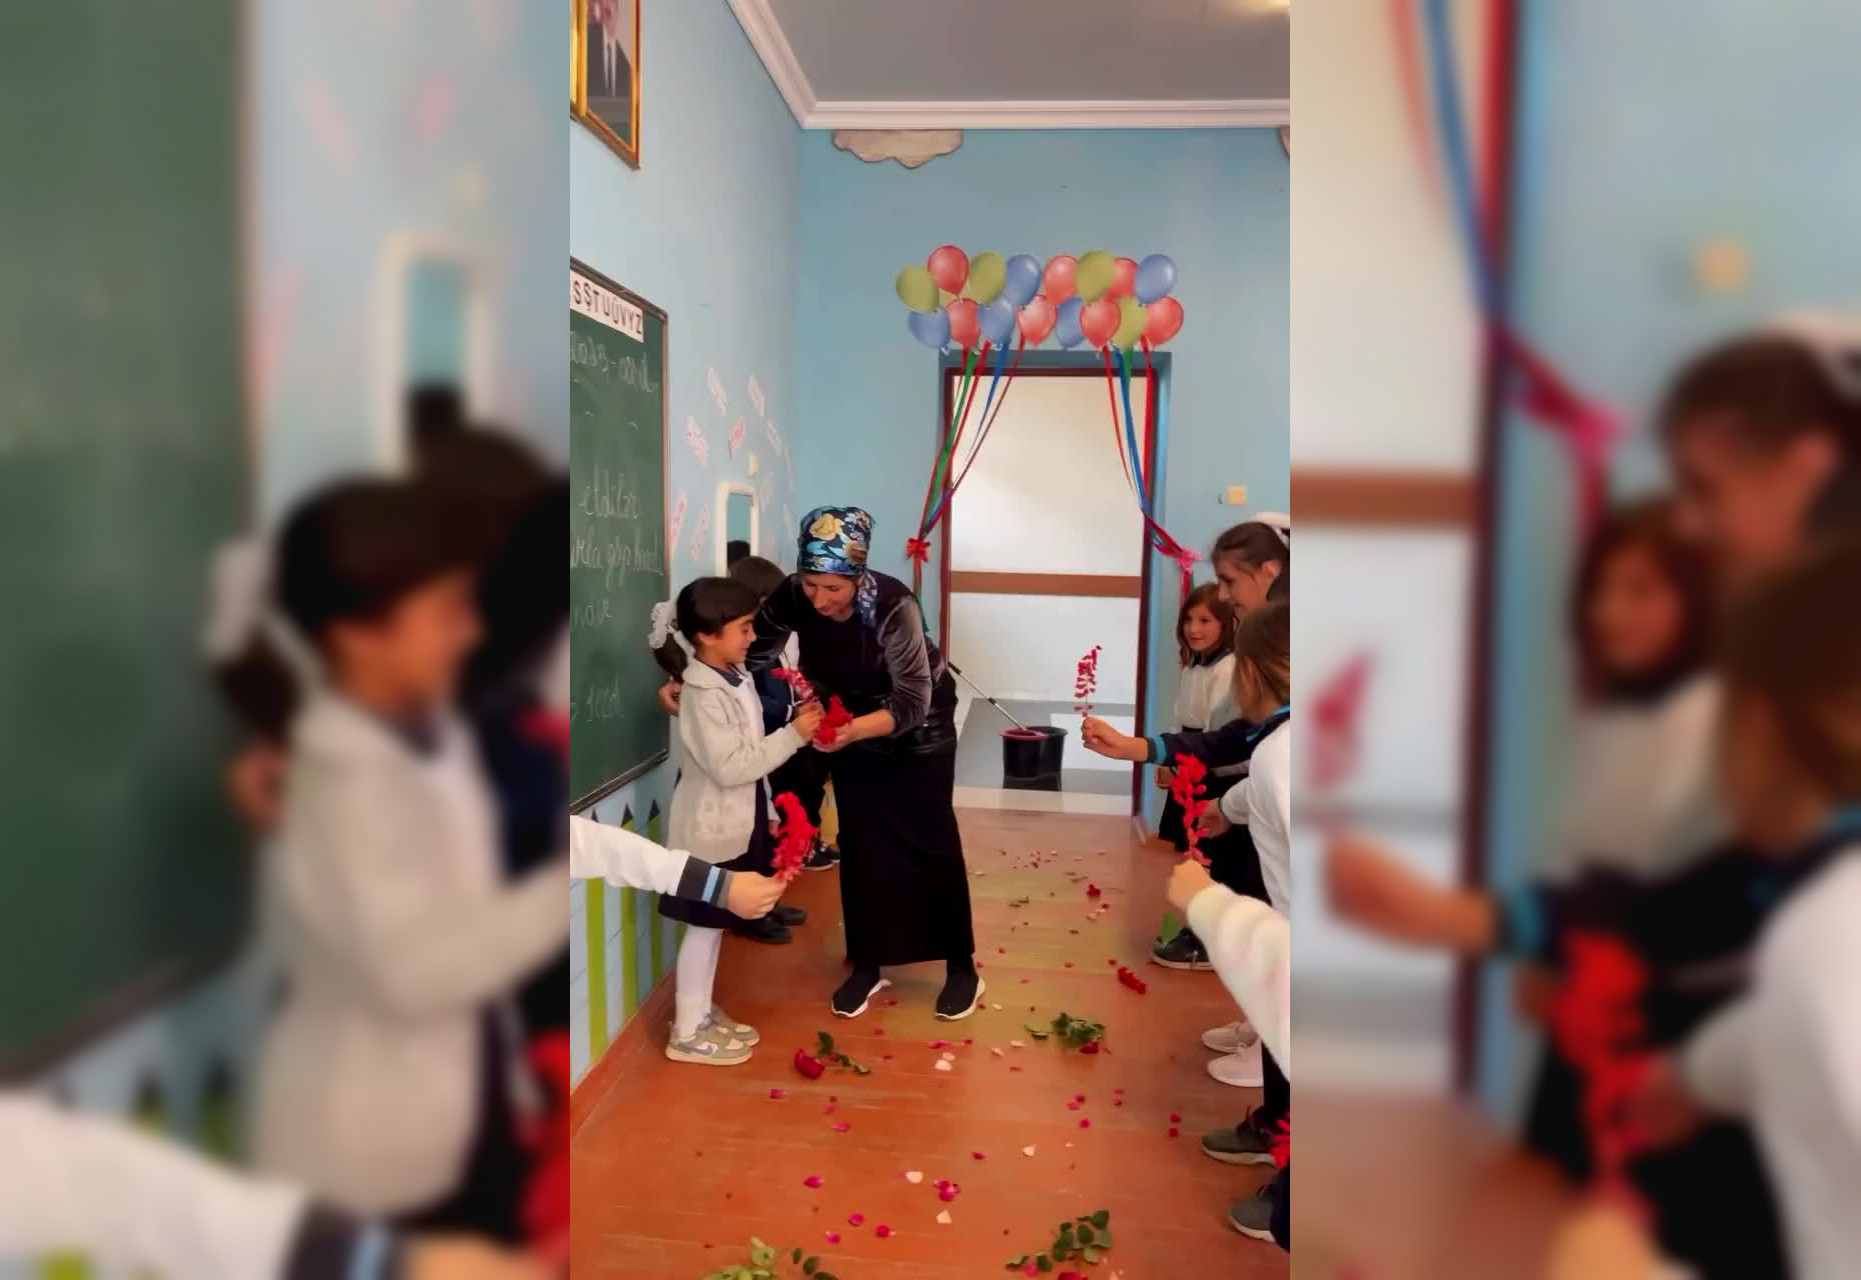 Милота дня: в Азербайджане школьники поздравили уборщицу с днём рождения